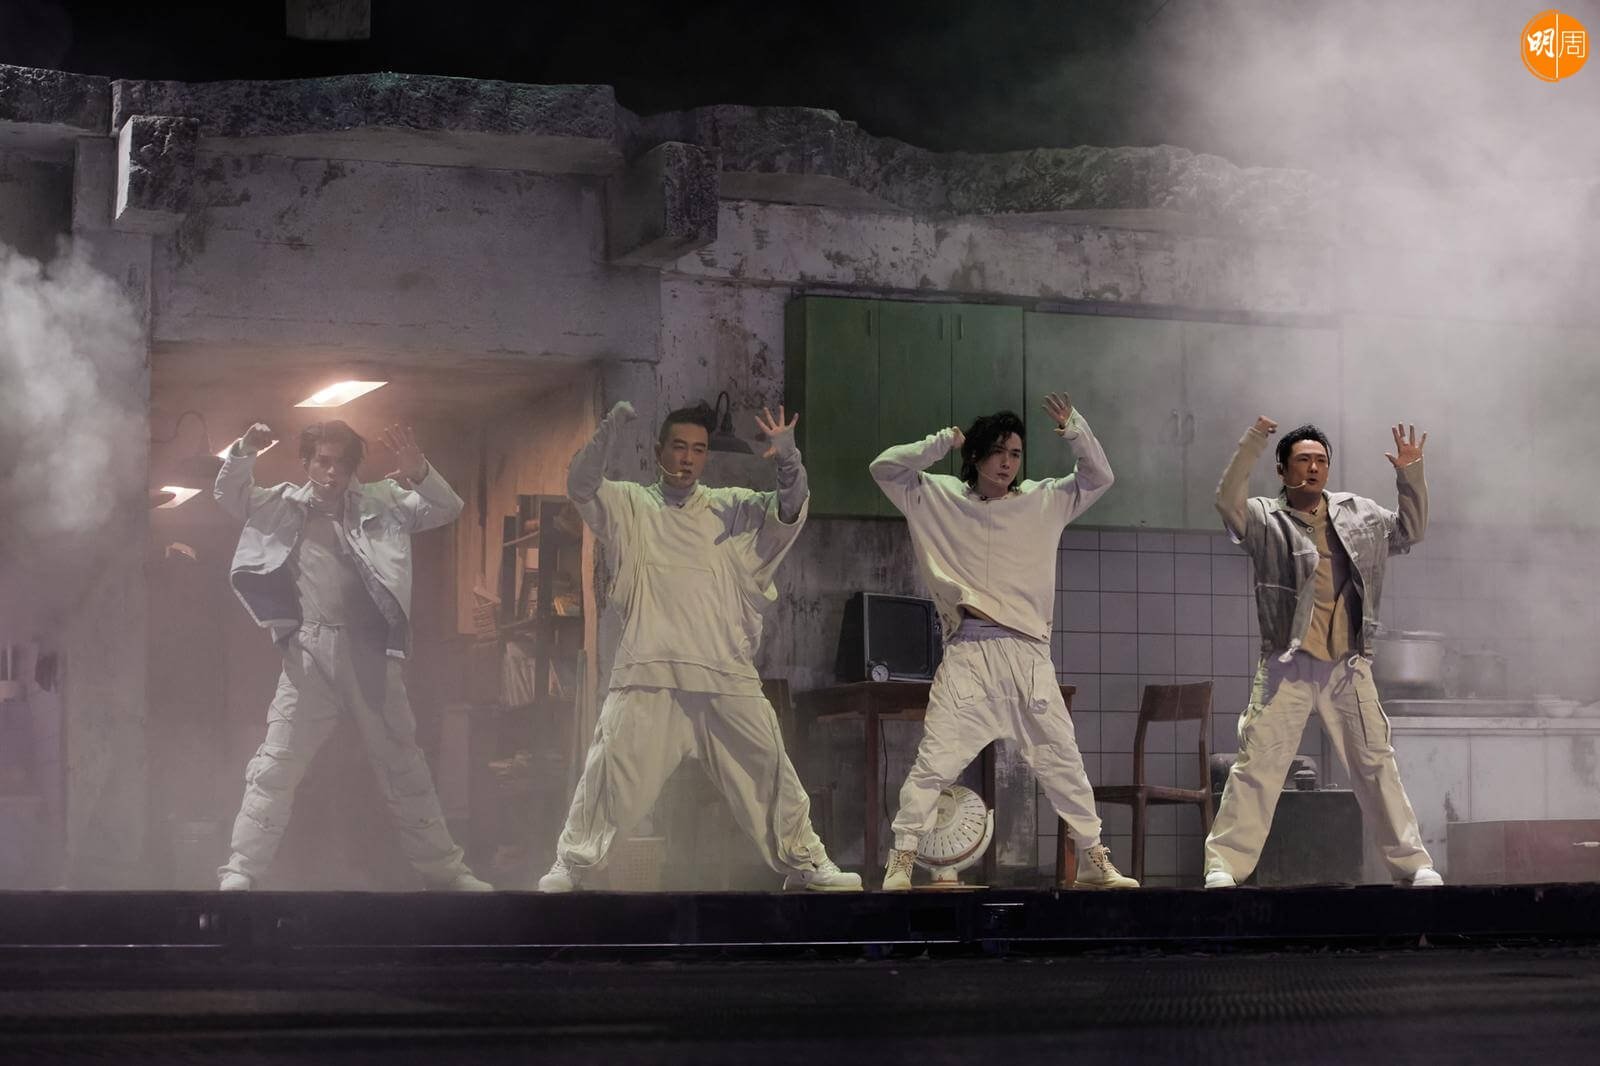 仁科、陳小春、李承炫、杜德偉在舞台上爆炸性演出。